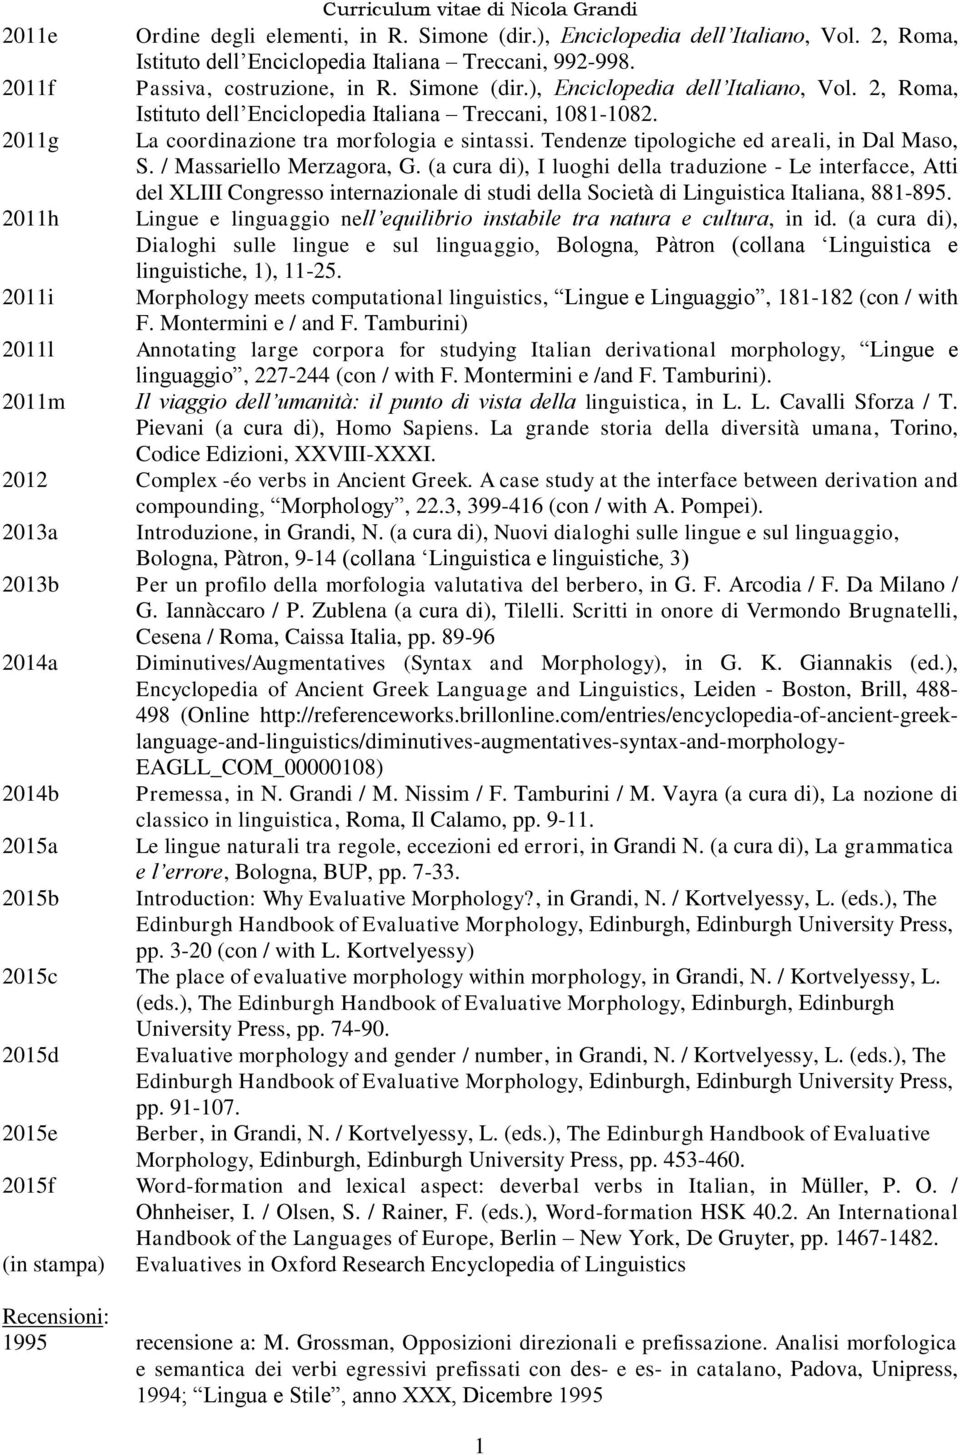 (a cura di), I luoghi della traduzione - Le interfacce, Atti del XLIII Congresso internazionale di studi della Società di Linguistica Italiana, 881-895.